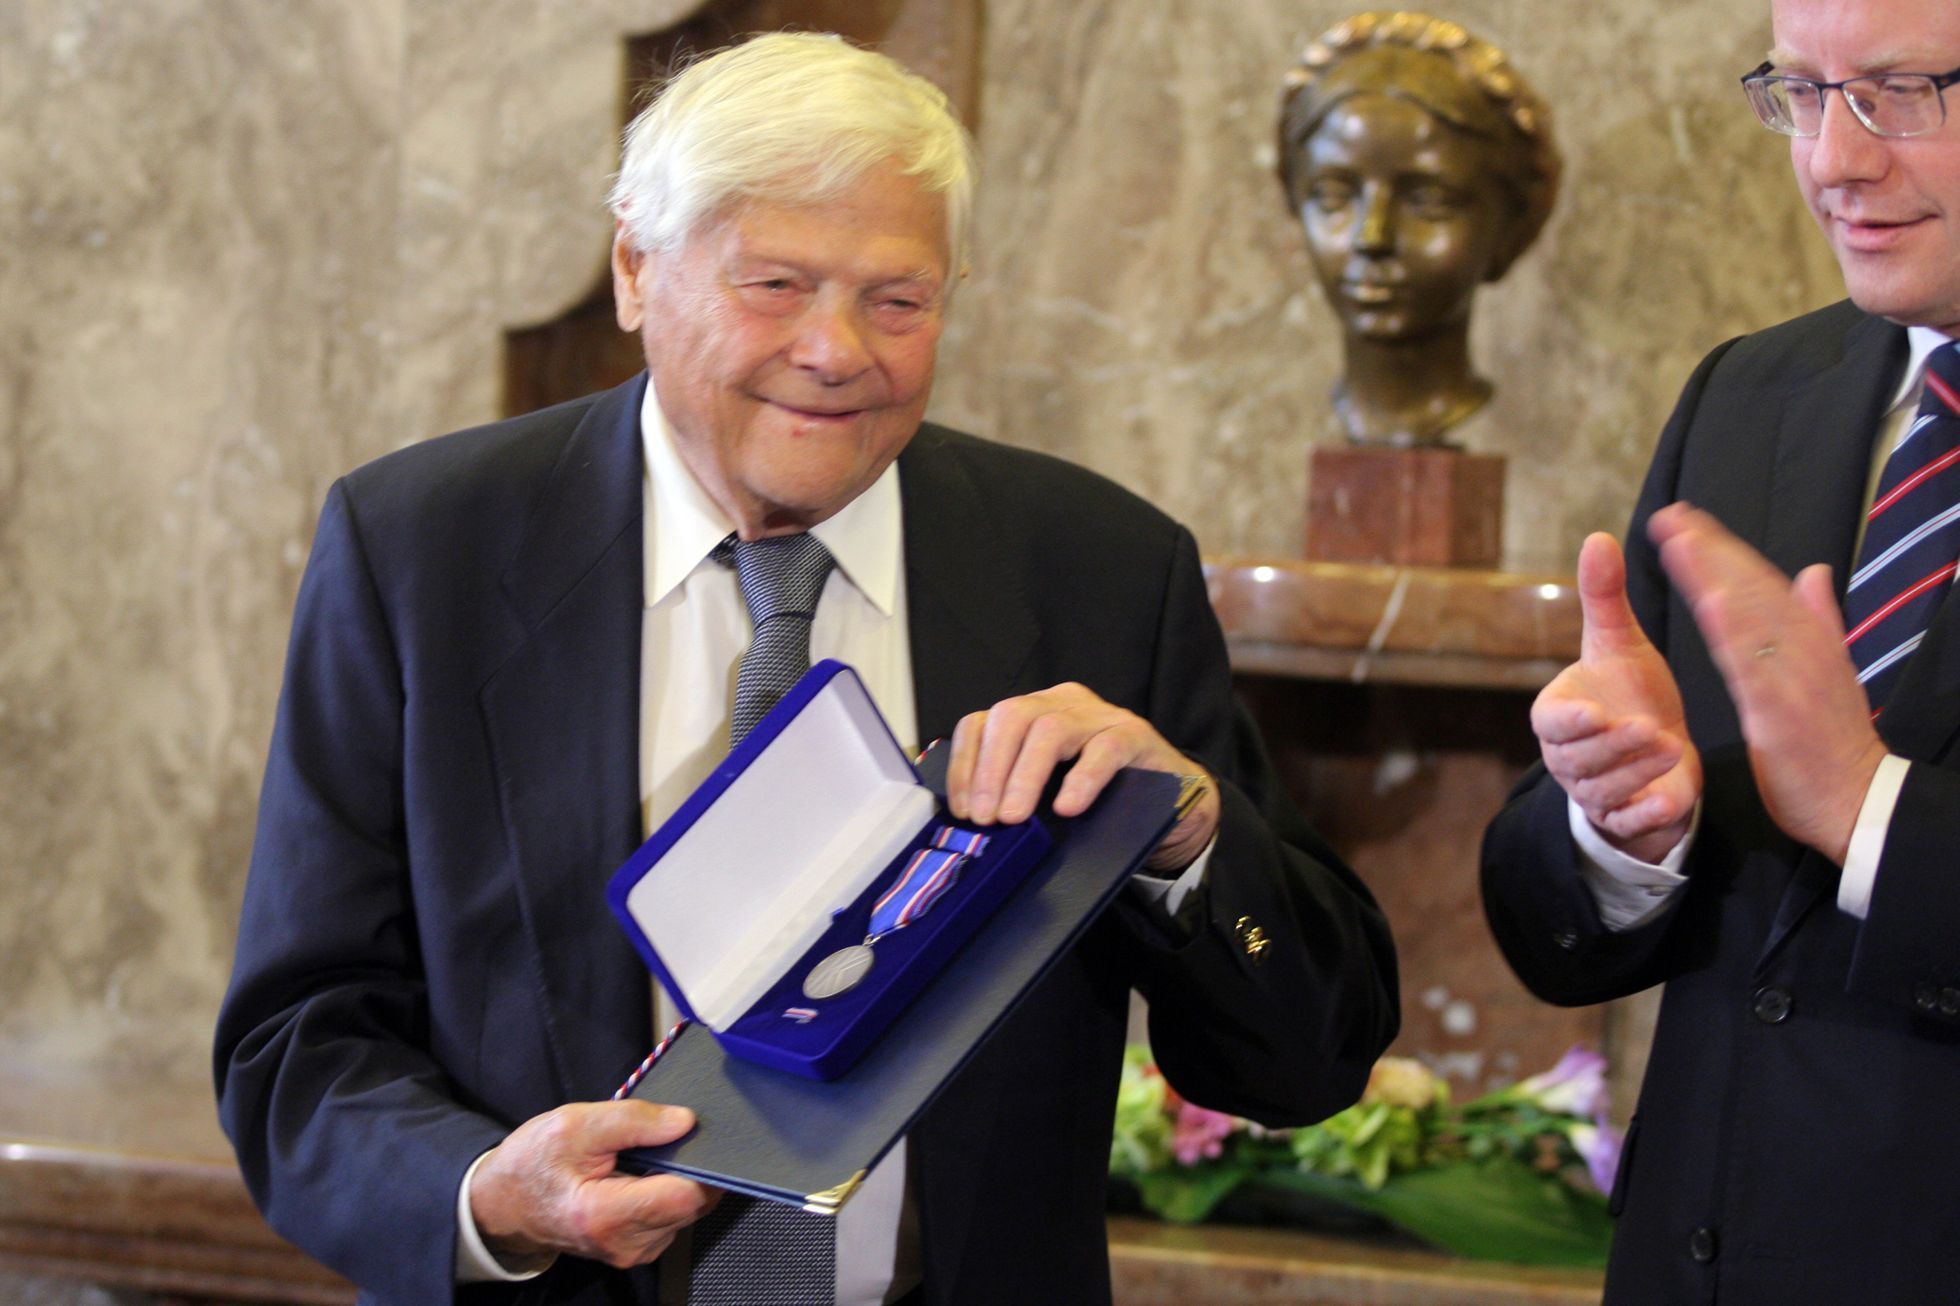 Jiří Brady vyznamenán premiérem a poslaneckou sněmovnou